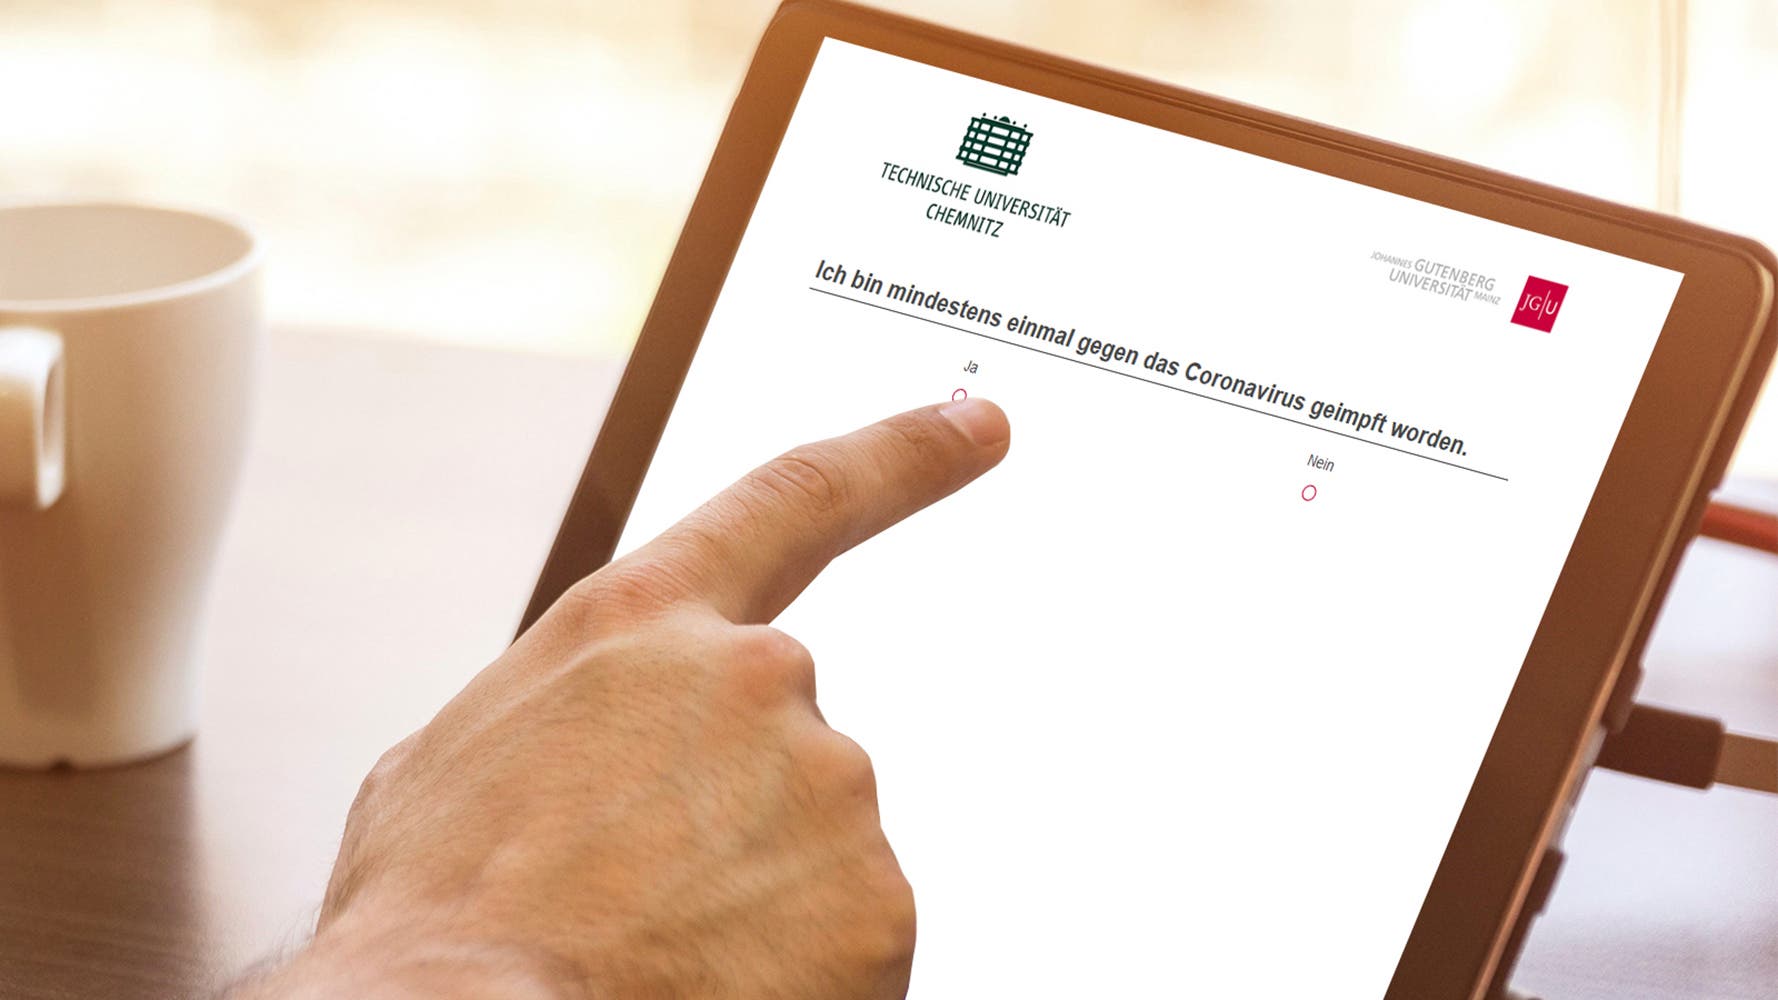 Auf einem Bildschirm fragt die Online-Studie der TU Chemnitz nach dem Impfstatus